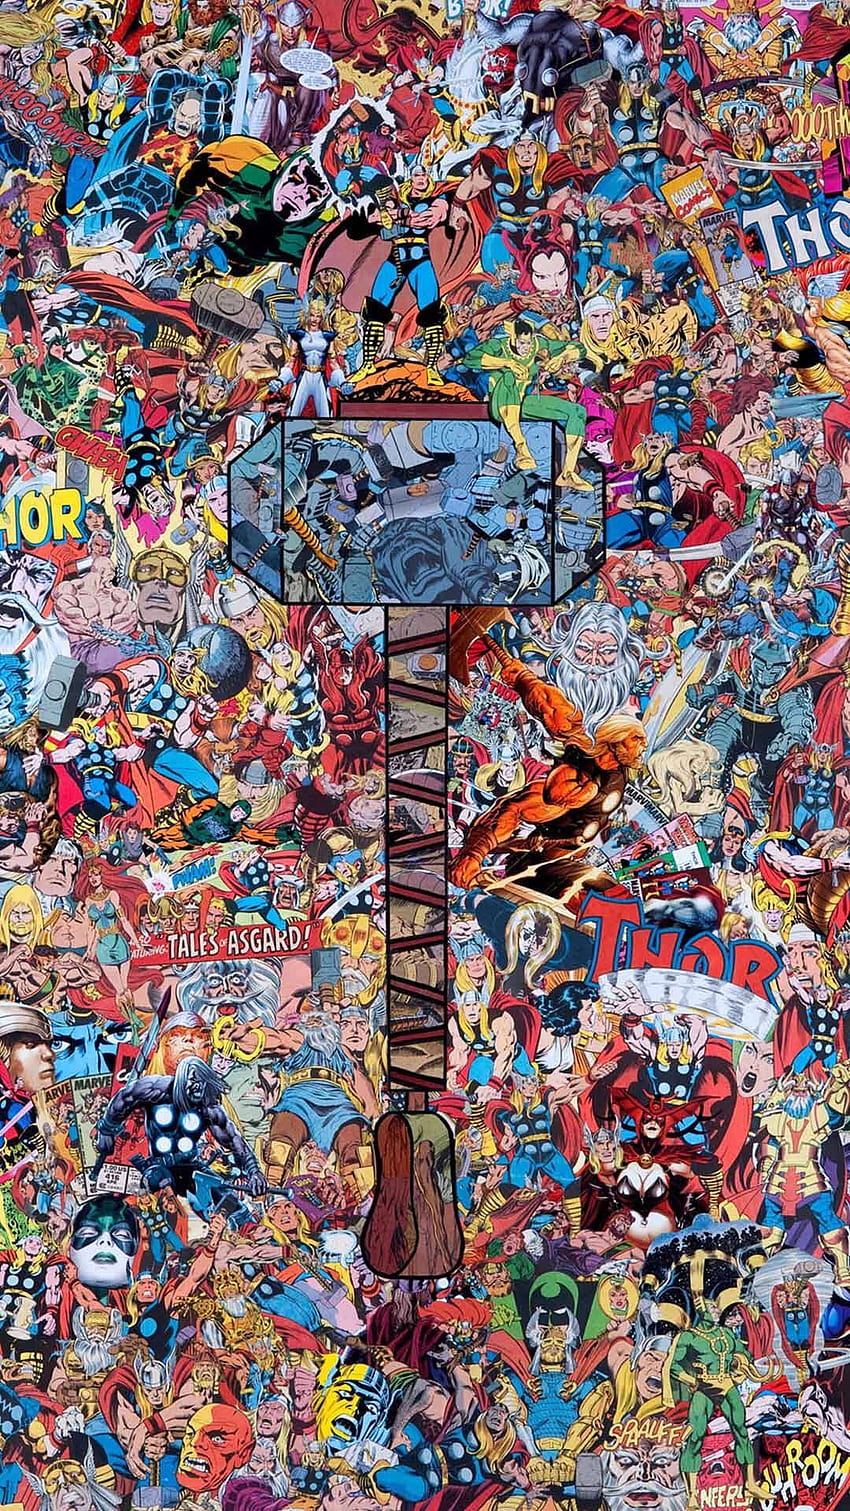 Marvel Thor Collage Phone Tablet / クリエイターの功績。 マーベル・コミック、トール、マーベル、マーベル・タブレット HD電話の壁紙